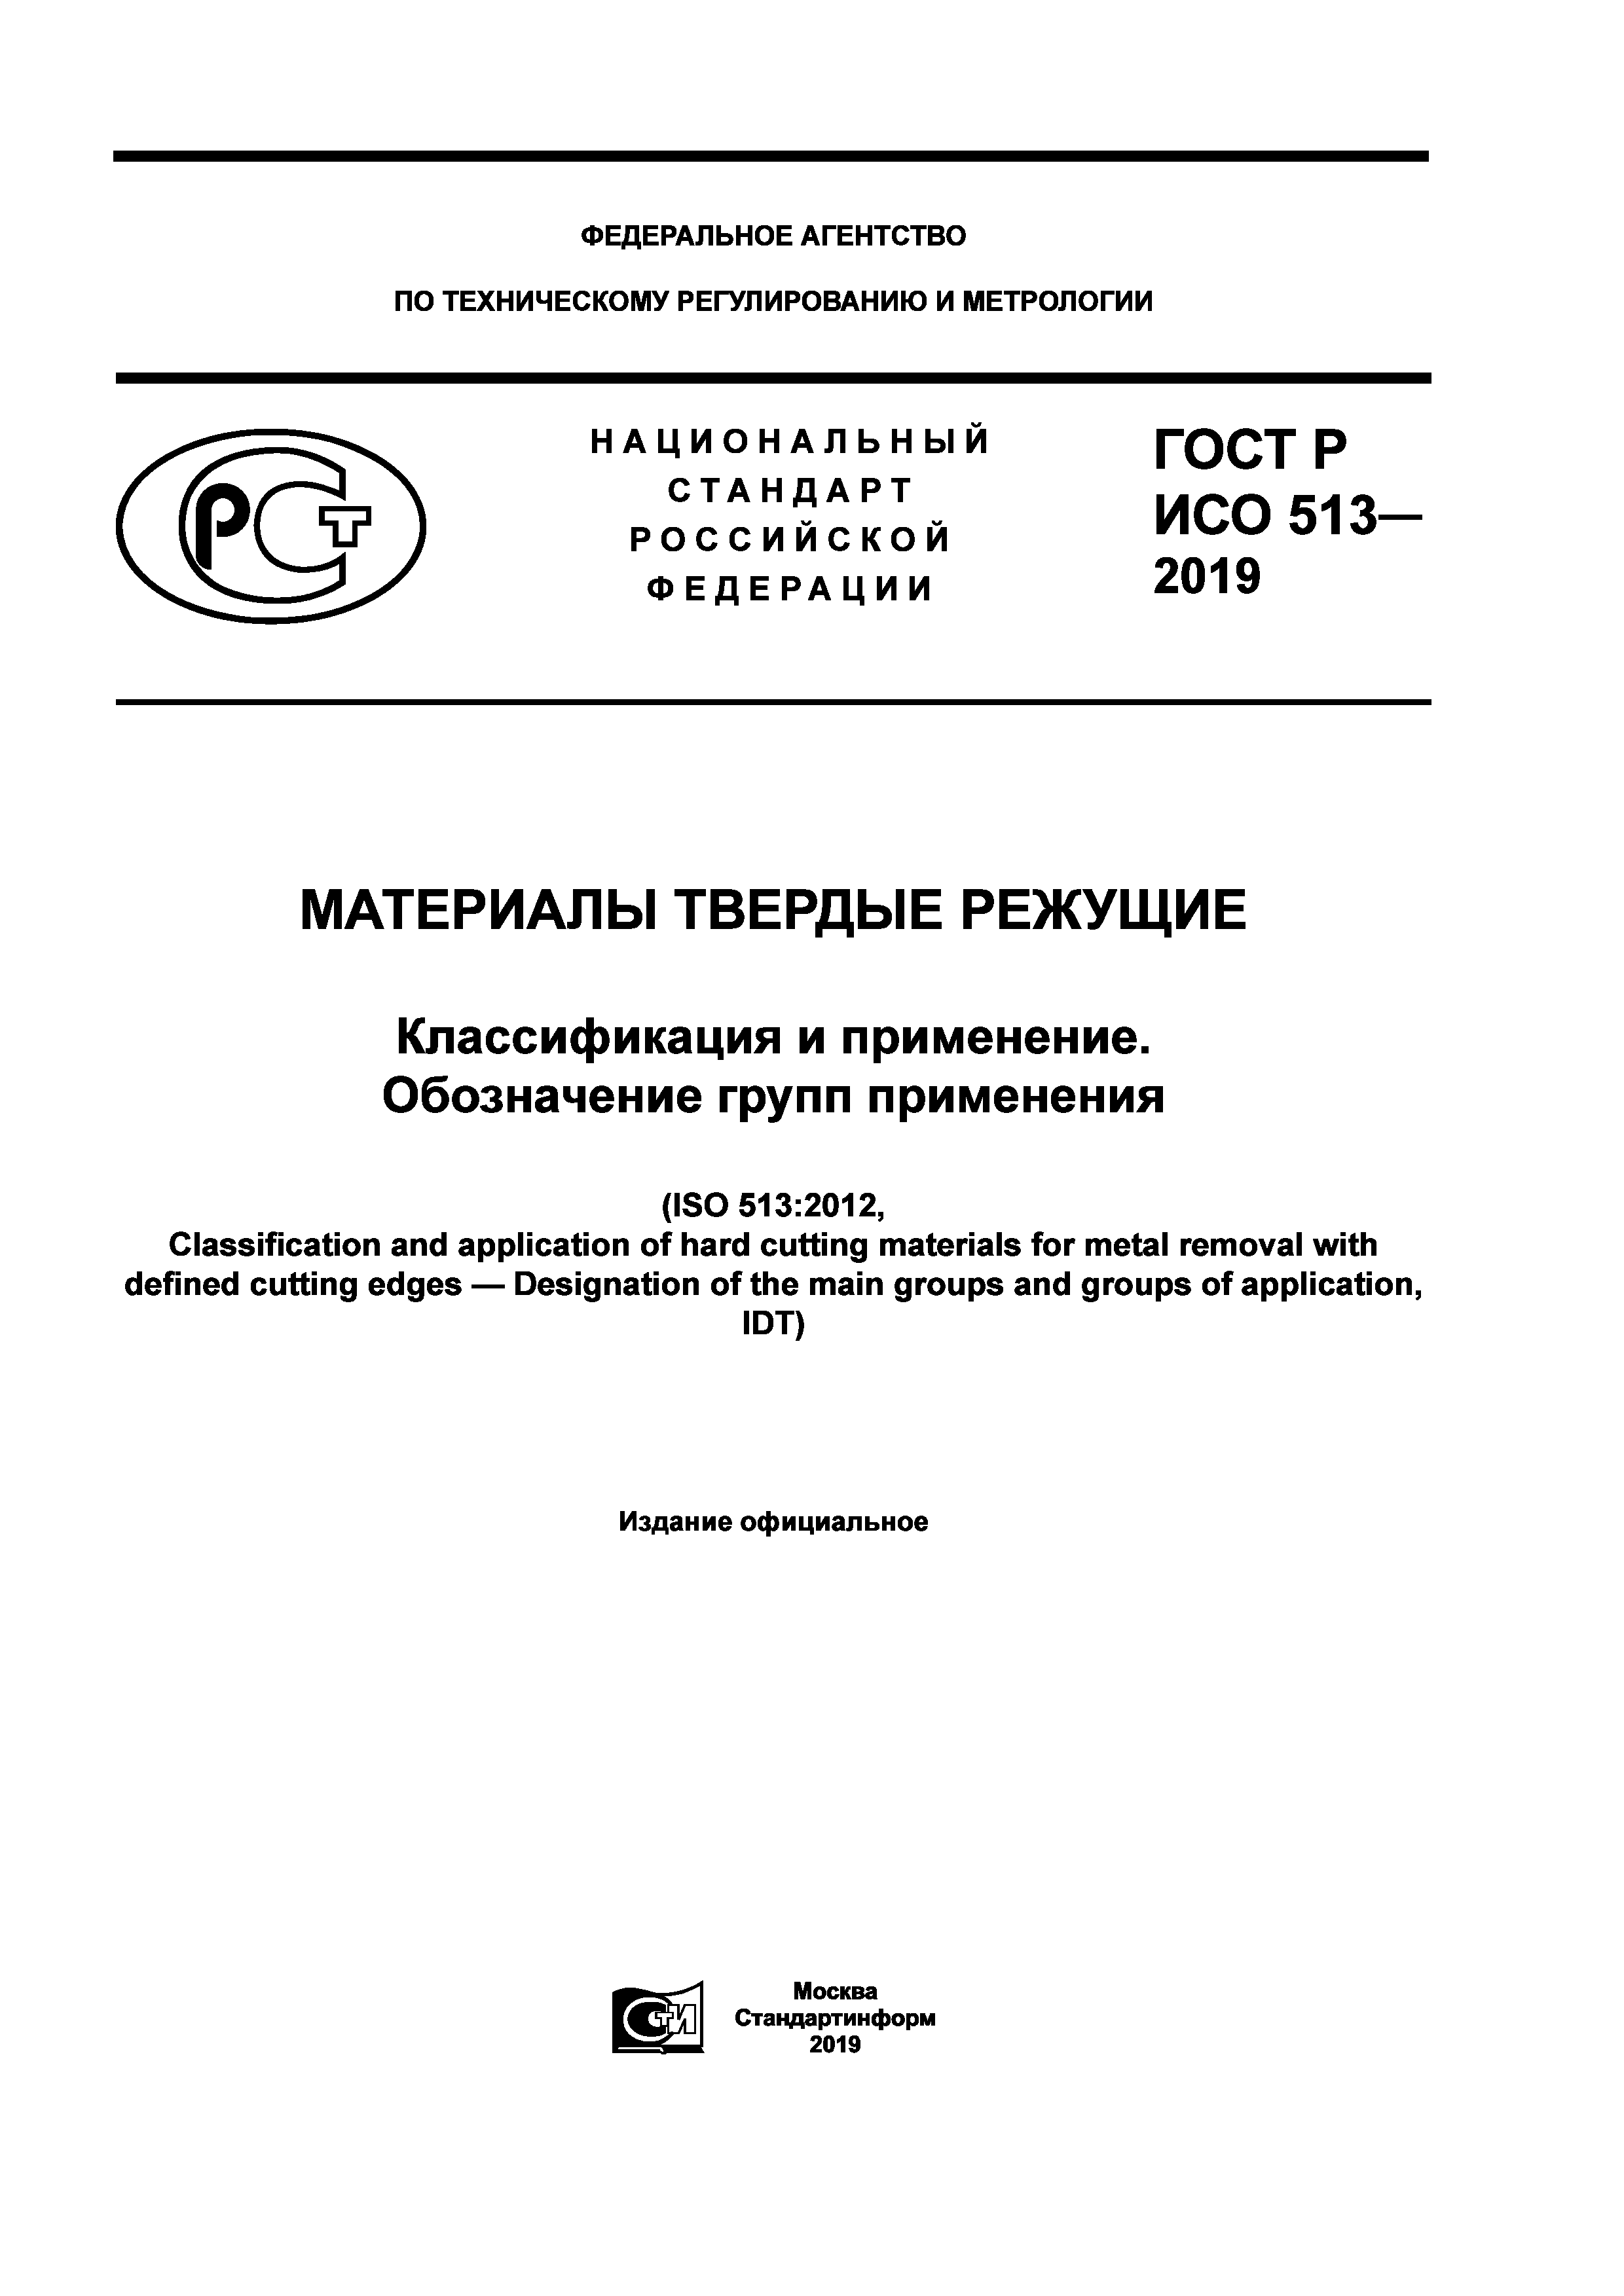 ГОСТ Р ИСО 513-2019